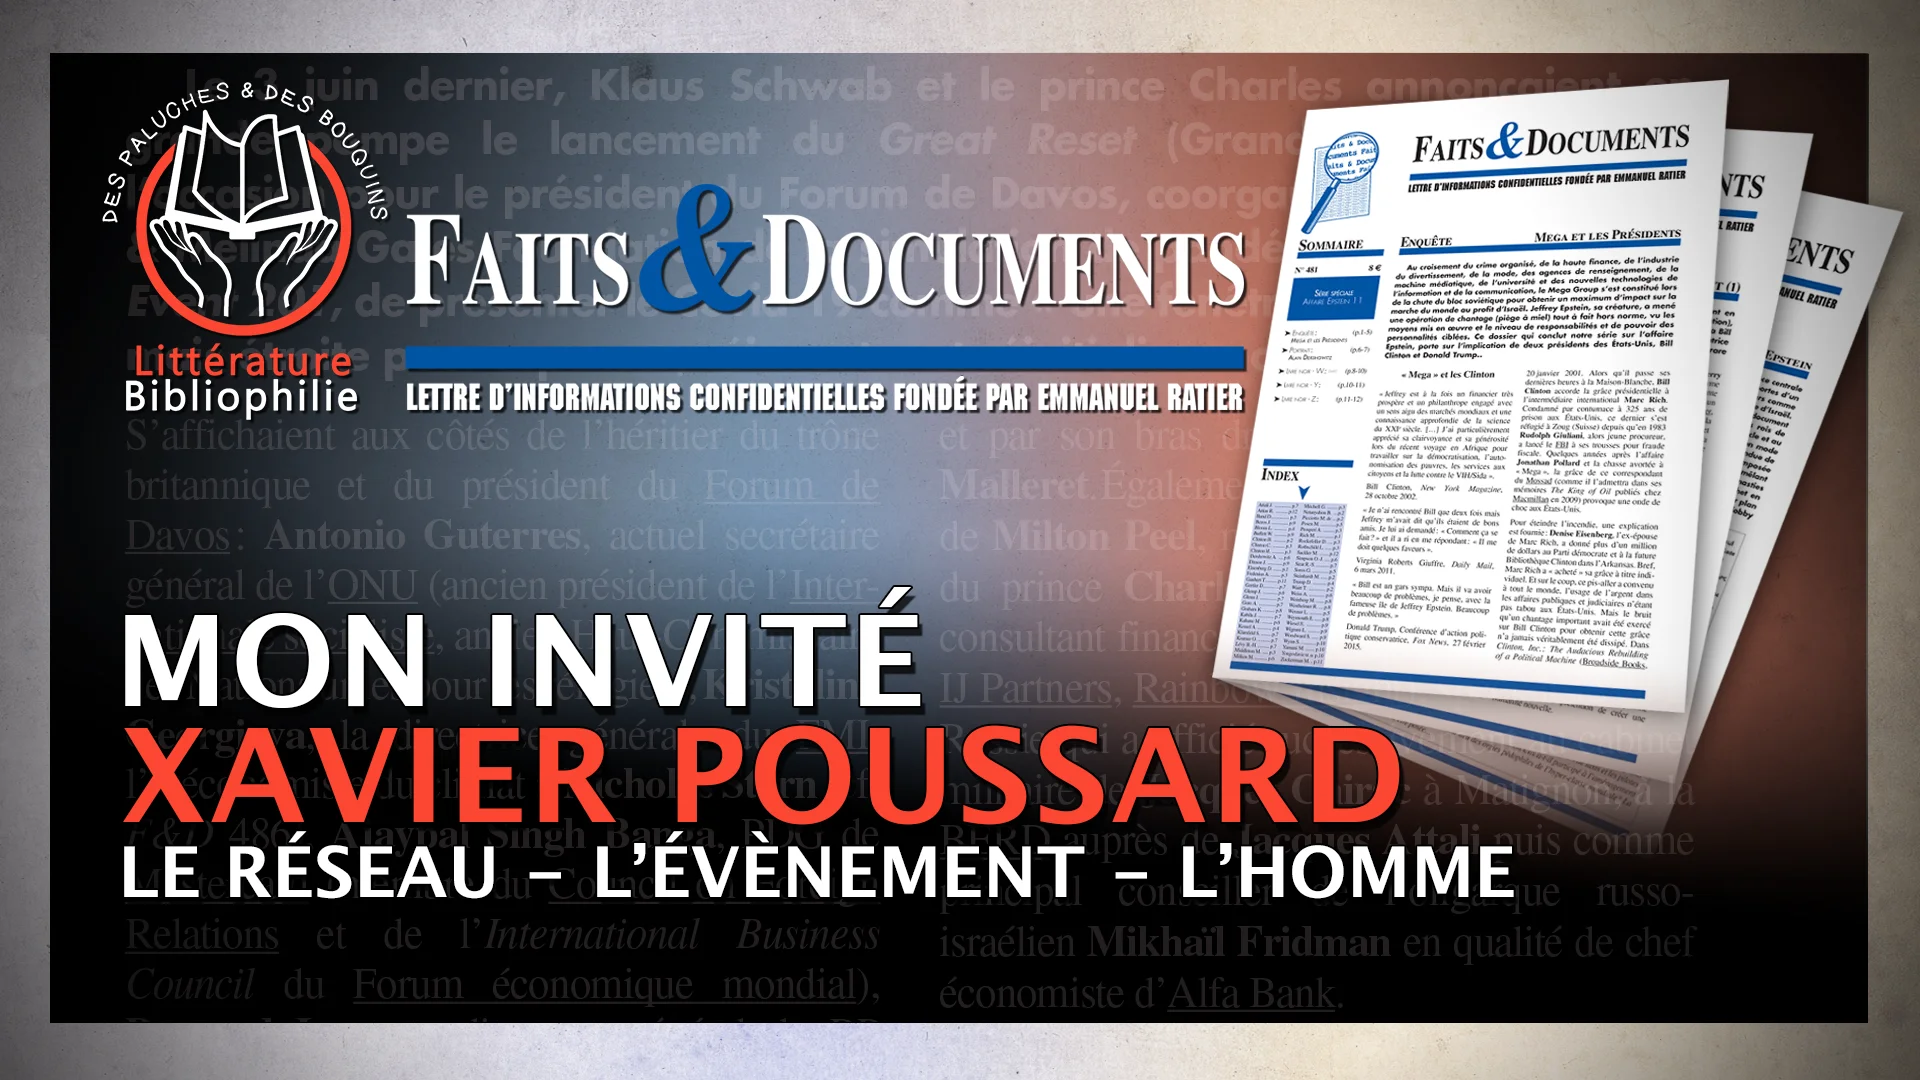 Xavier Poussard de Faits & Documents – Le réseau, L’évènement, L’homme.